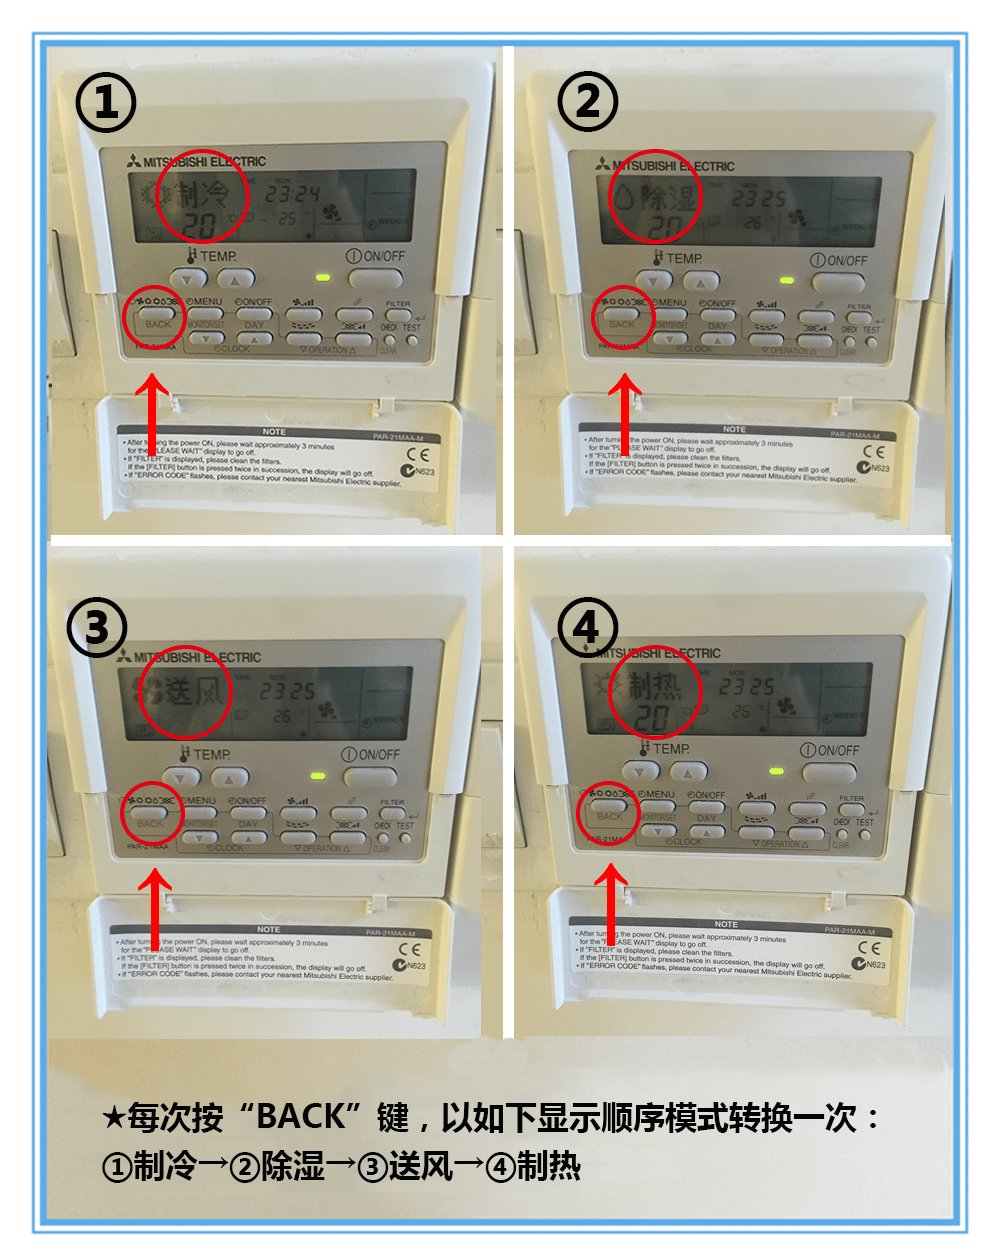 三菱电机中央空调面板遥控器设置图解(上篇)